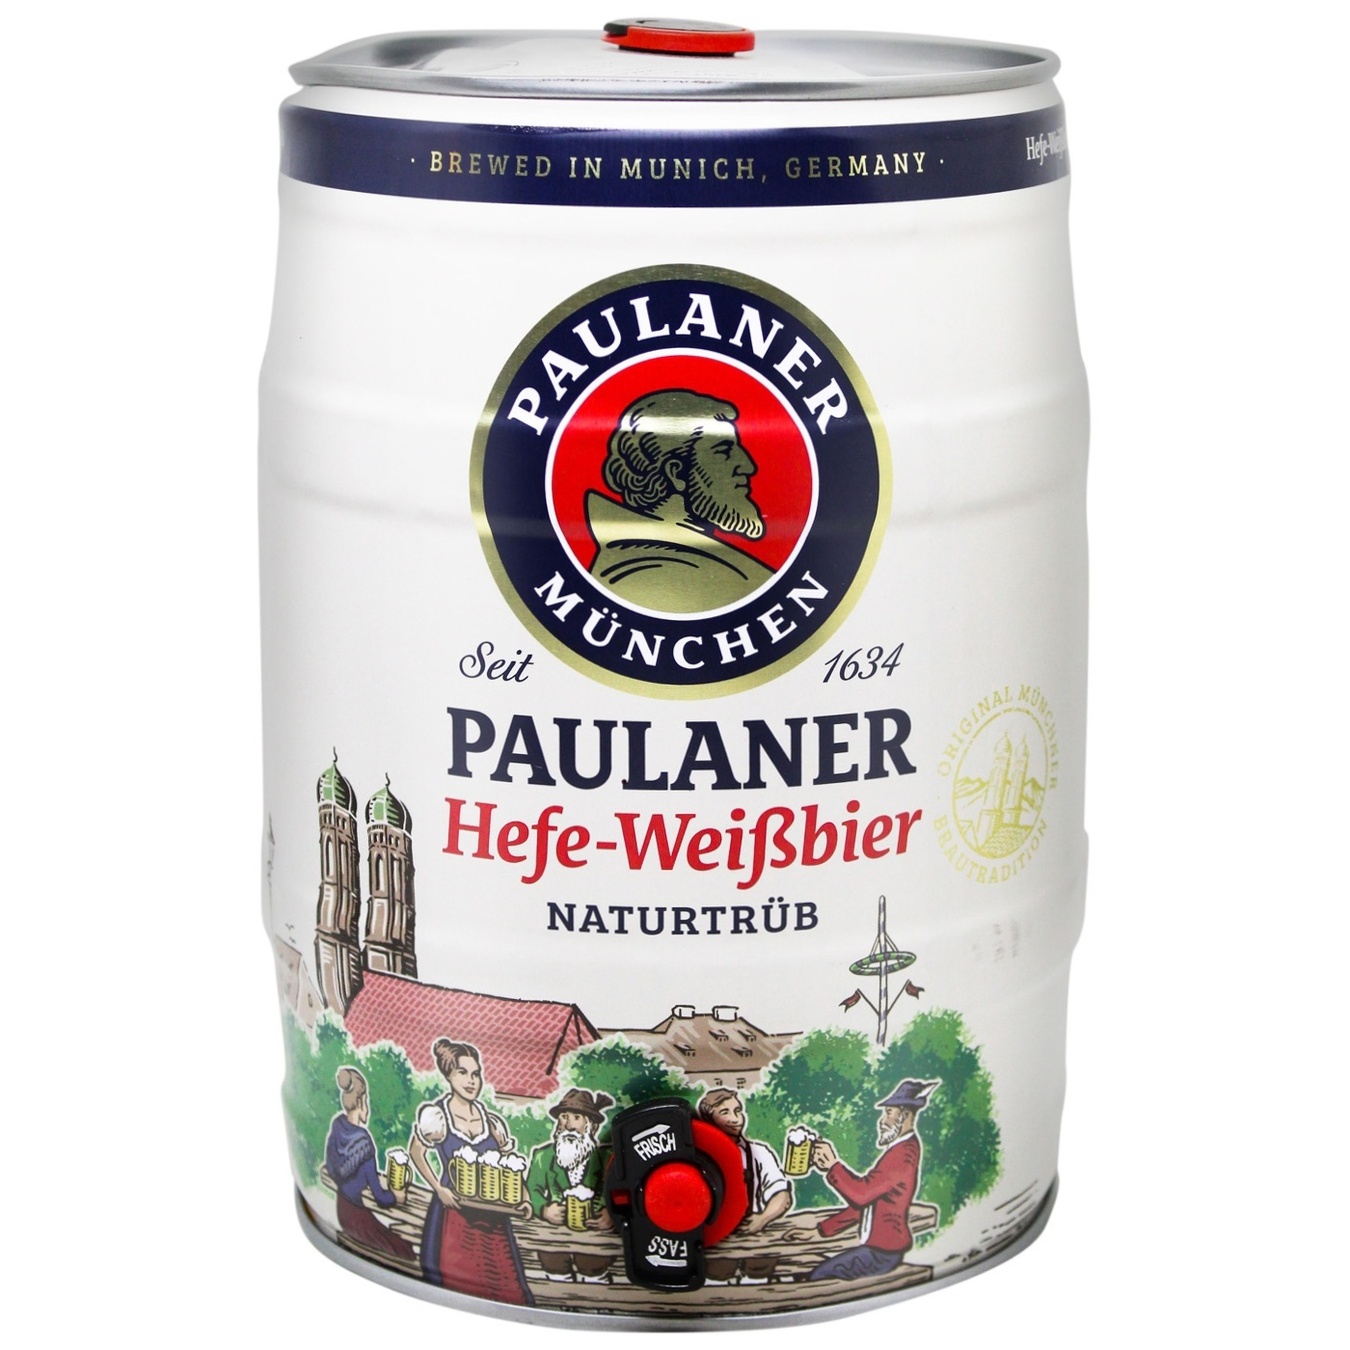 Пиво світле Paulaner Weissbier нефільтроване 5,5% 5л з/б